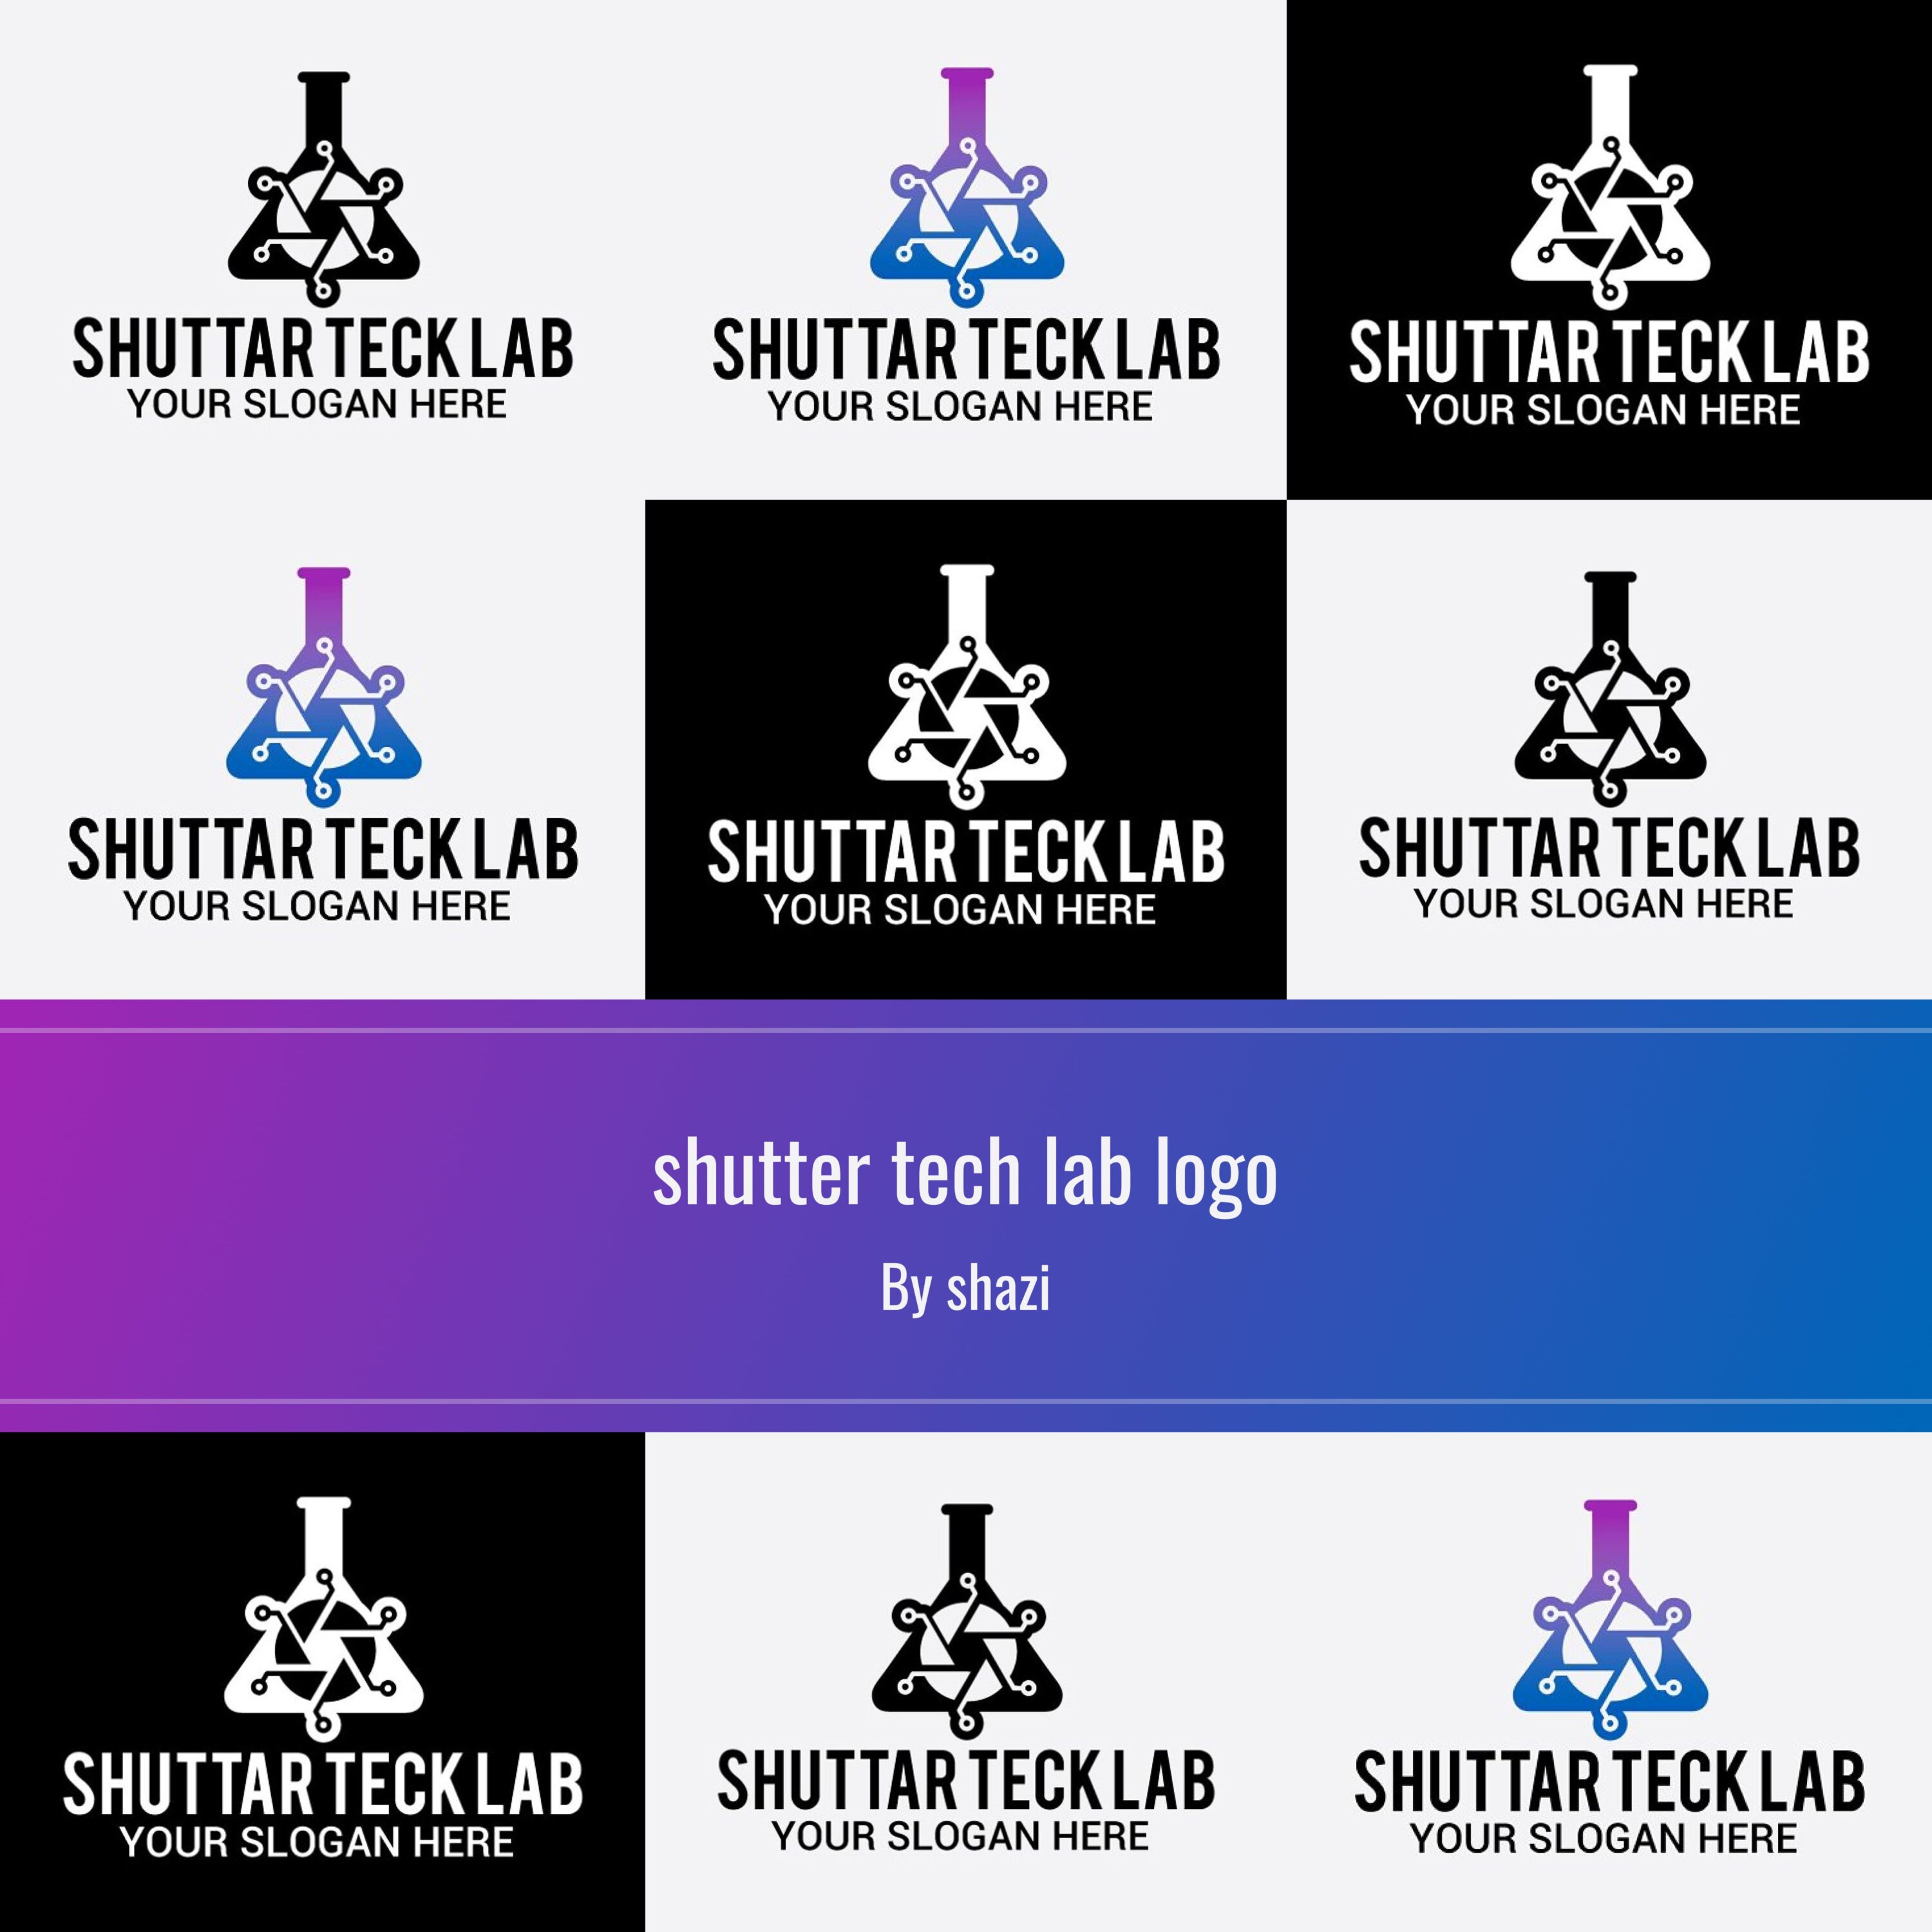 shutter tech lab logo.